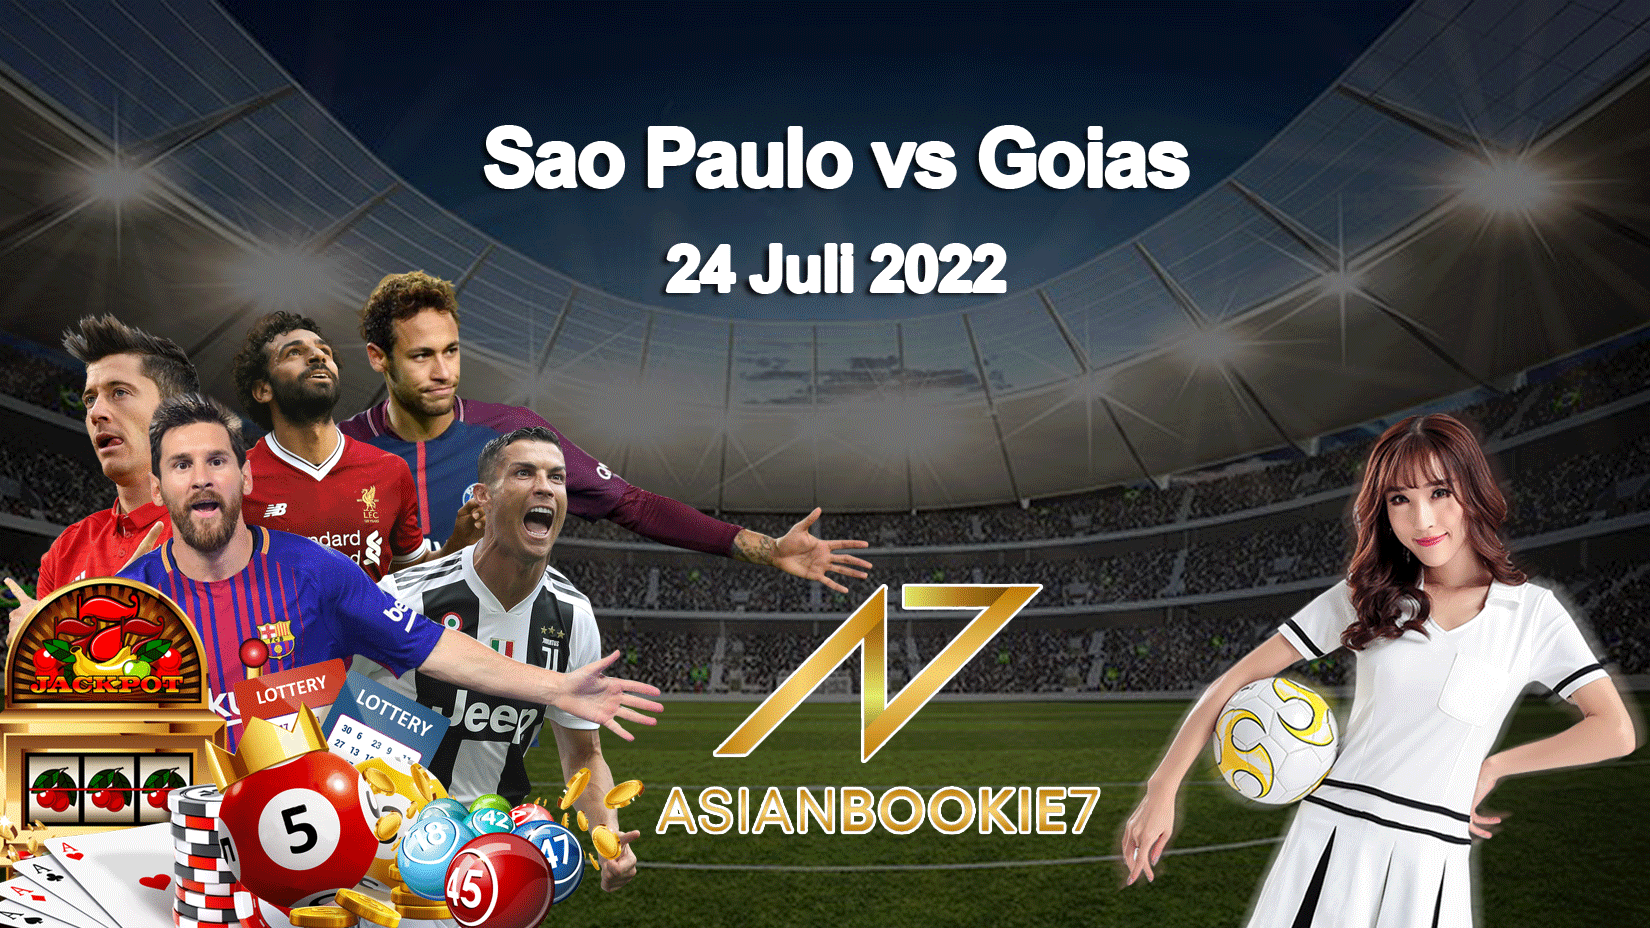 Prediksi Sao Paulo vs Goias 24 Juli 2022